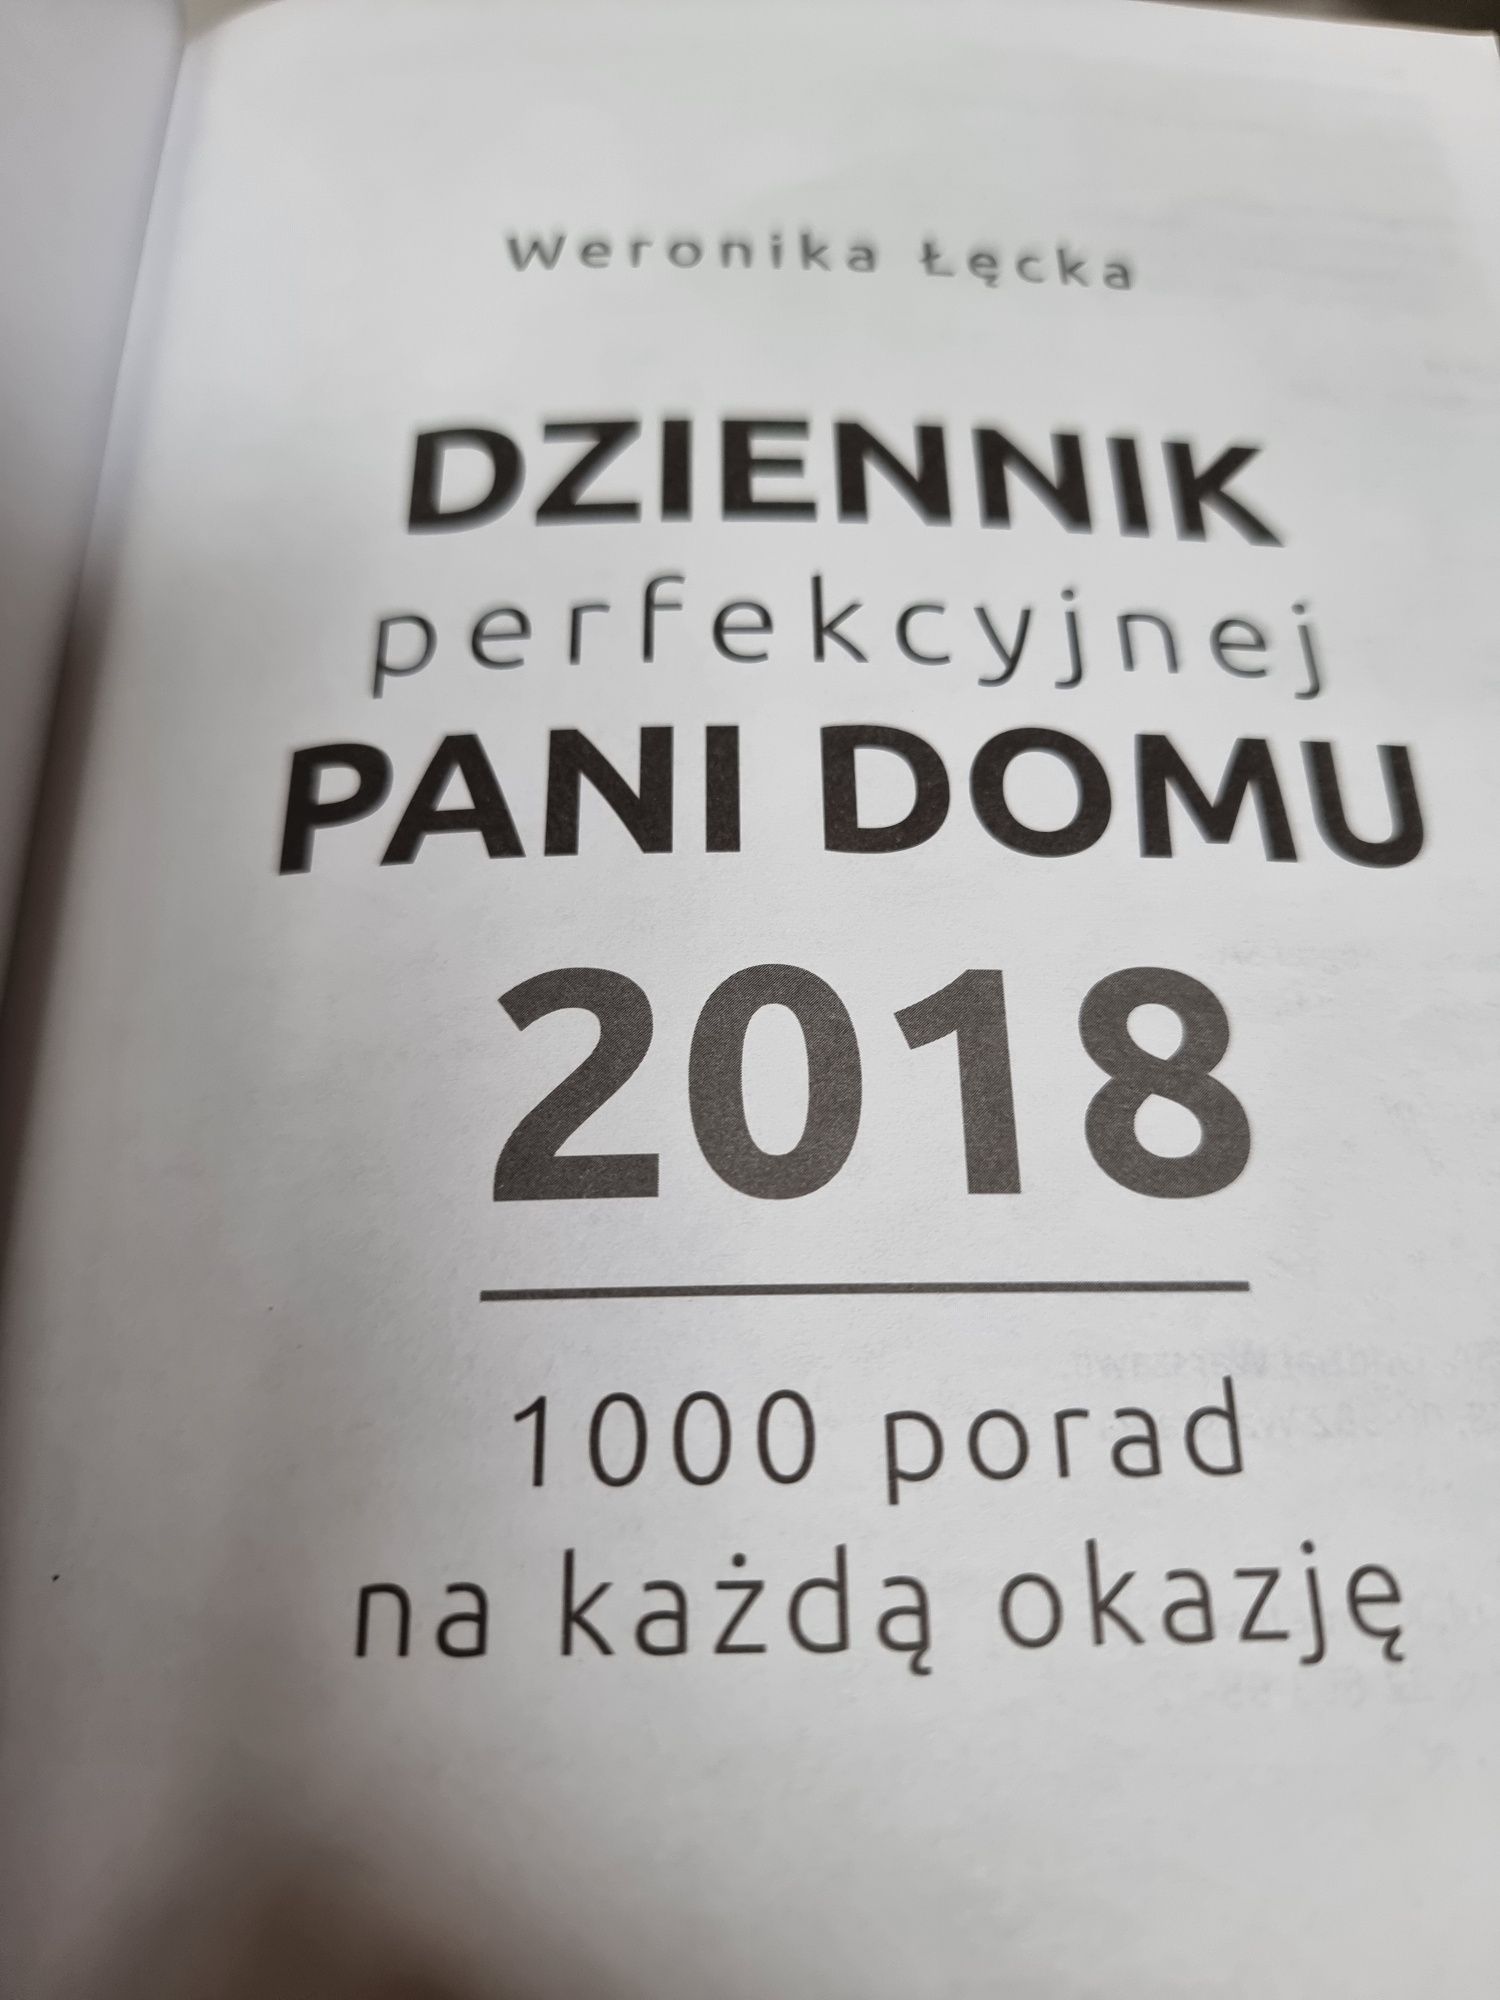 Dziennik perfekcyjnej pani domu 2018. Weronika Łęcka. Videograf.